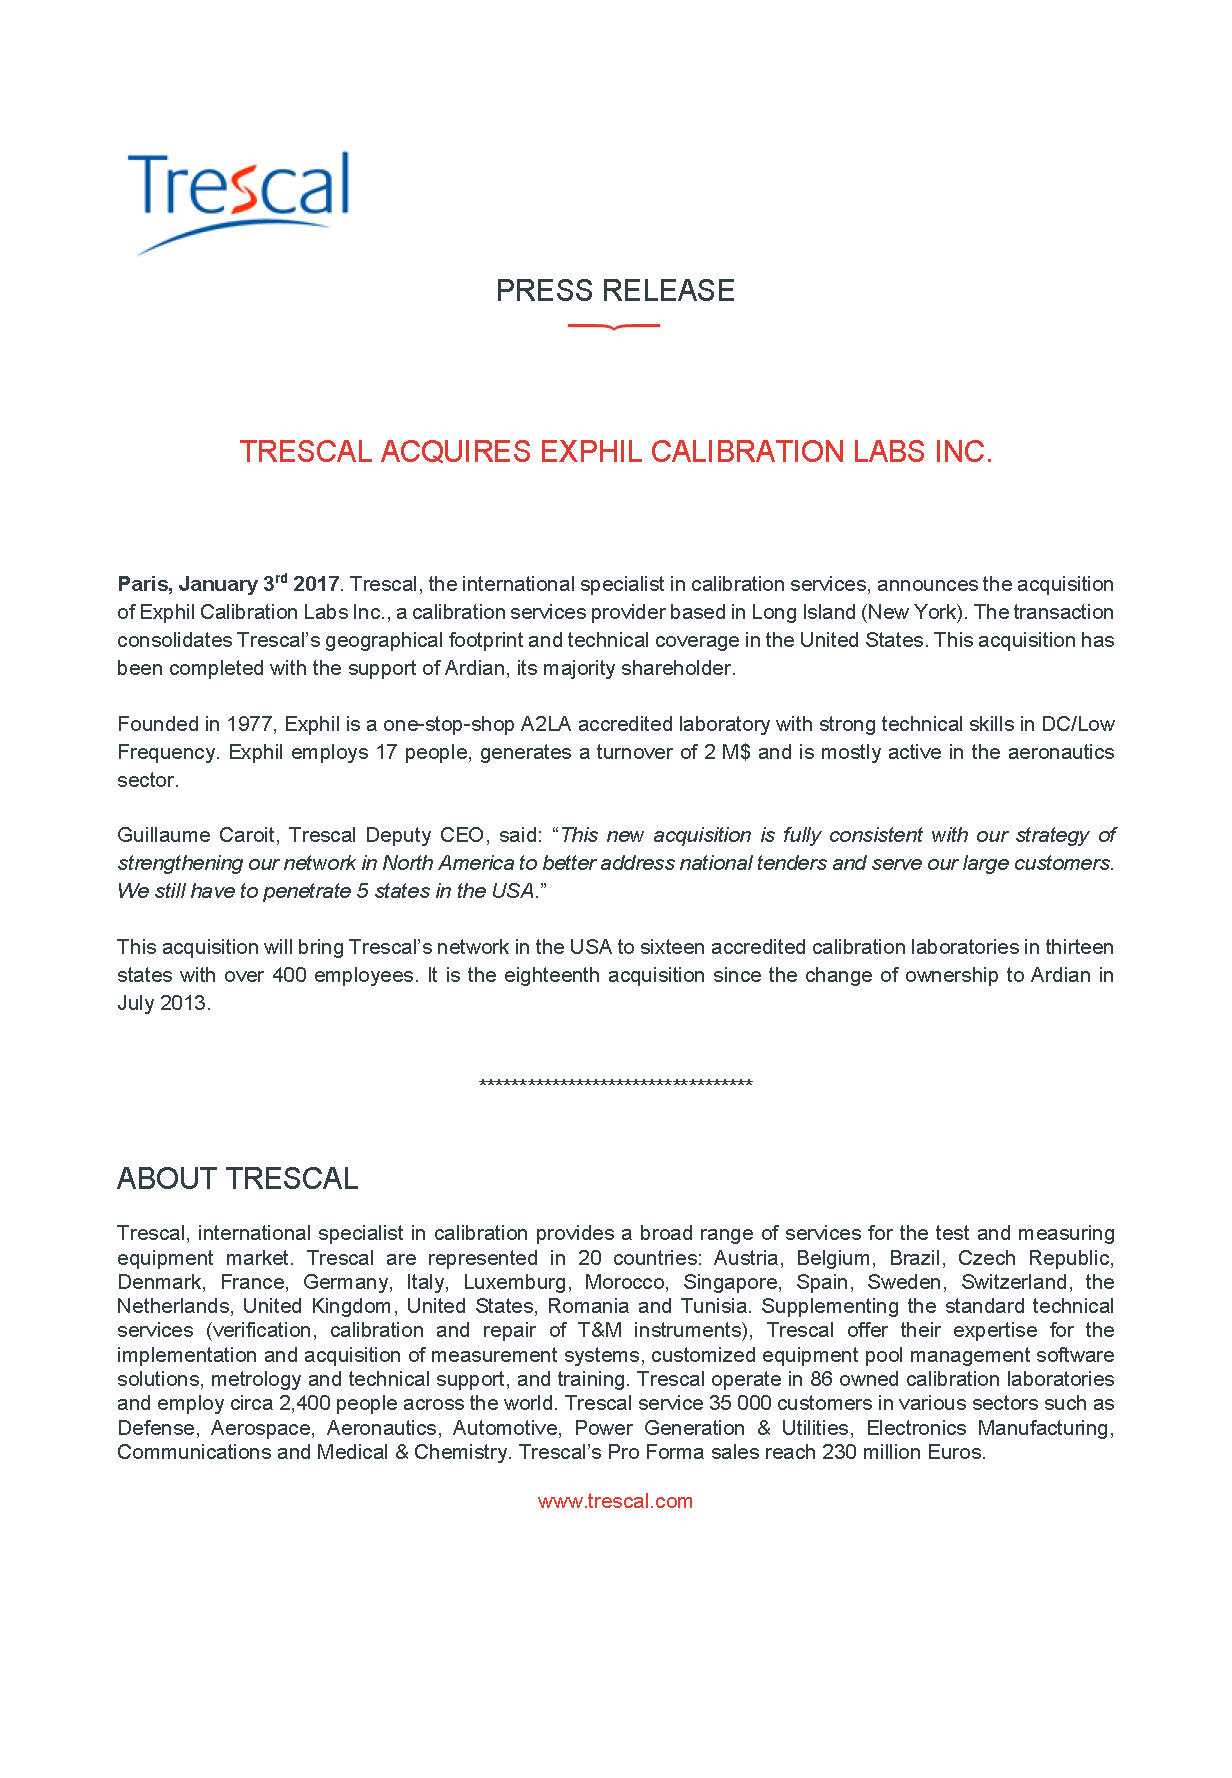 Trescal Acquires Exphil Calibration Labs Inc.